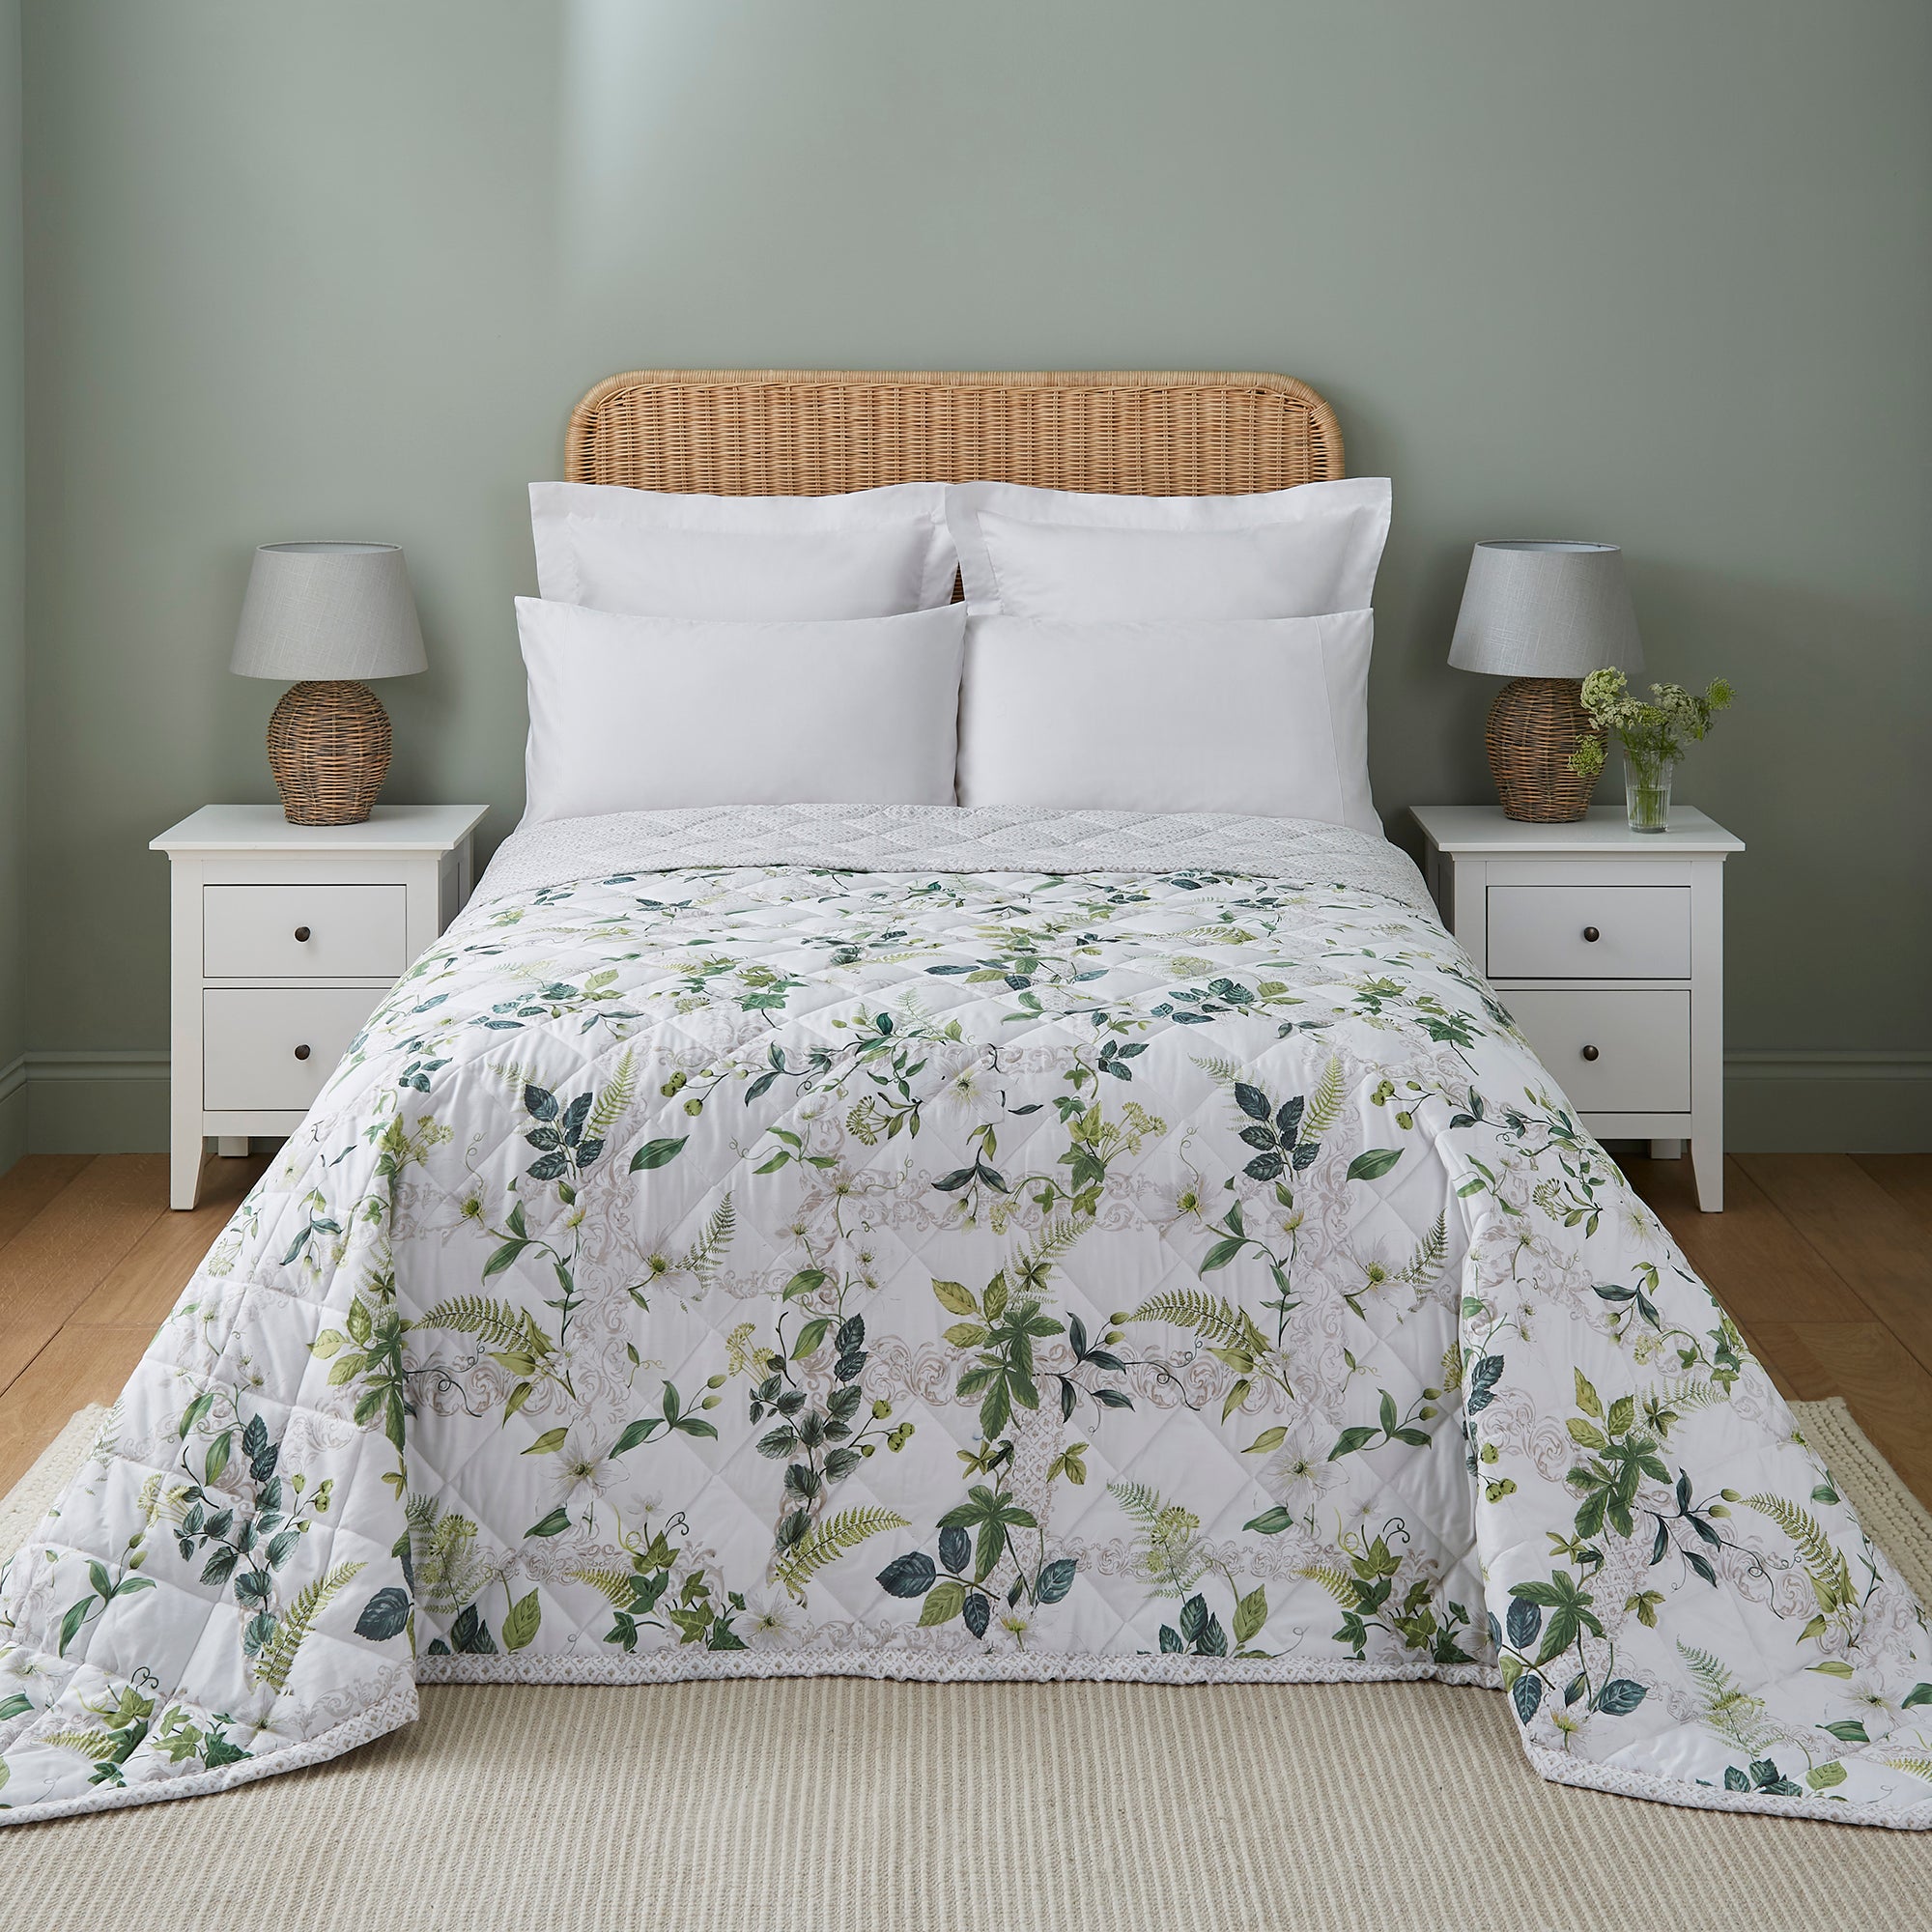 Dorma Botanical Garden 100 Cotton Bedspread Whitegreen